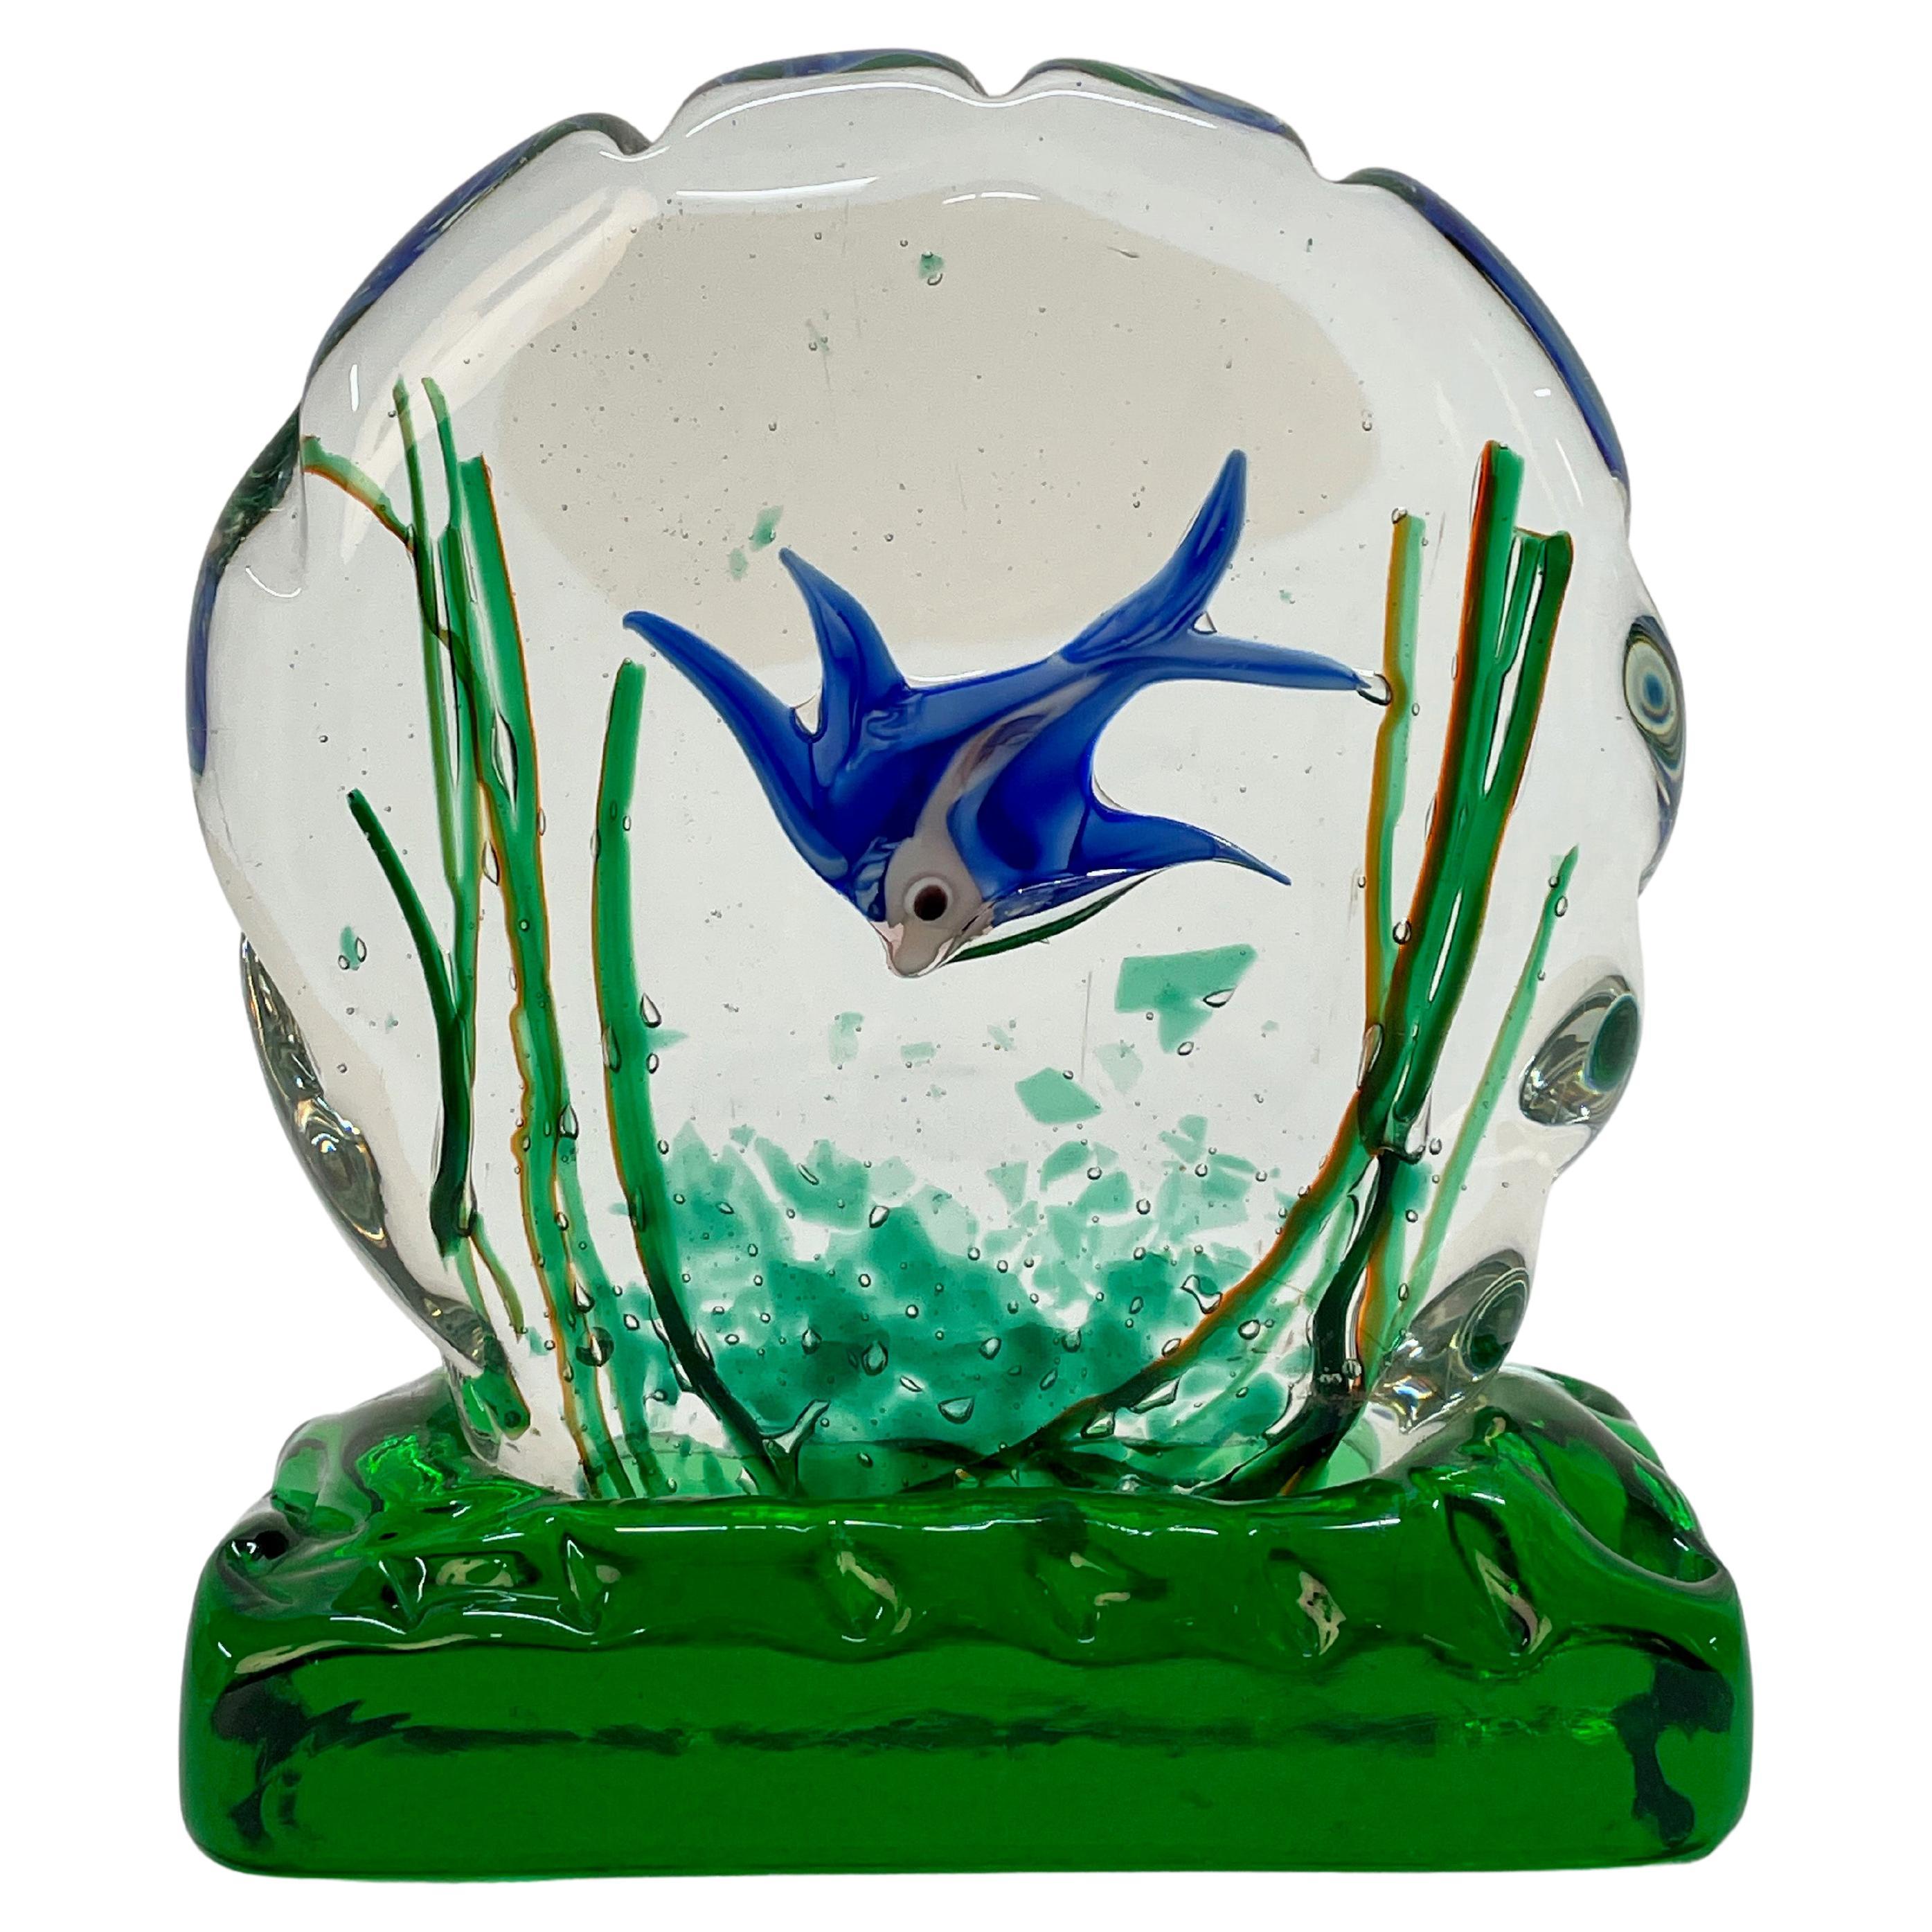 Riccardo Licata Midcentury Murano Glass "Aquarium" Sculpture for Cenedese, 1960s